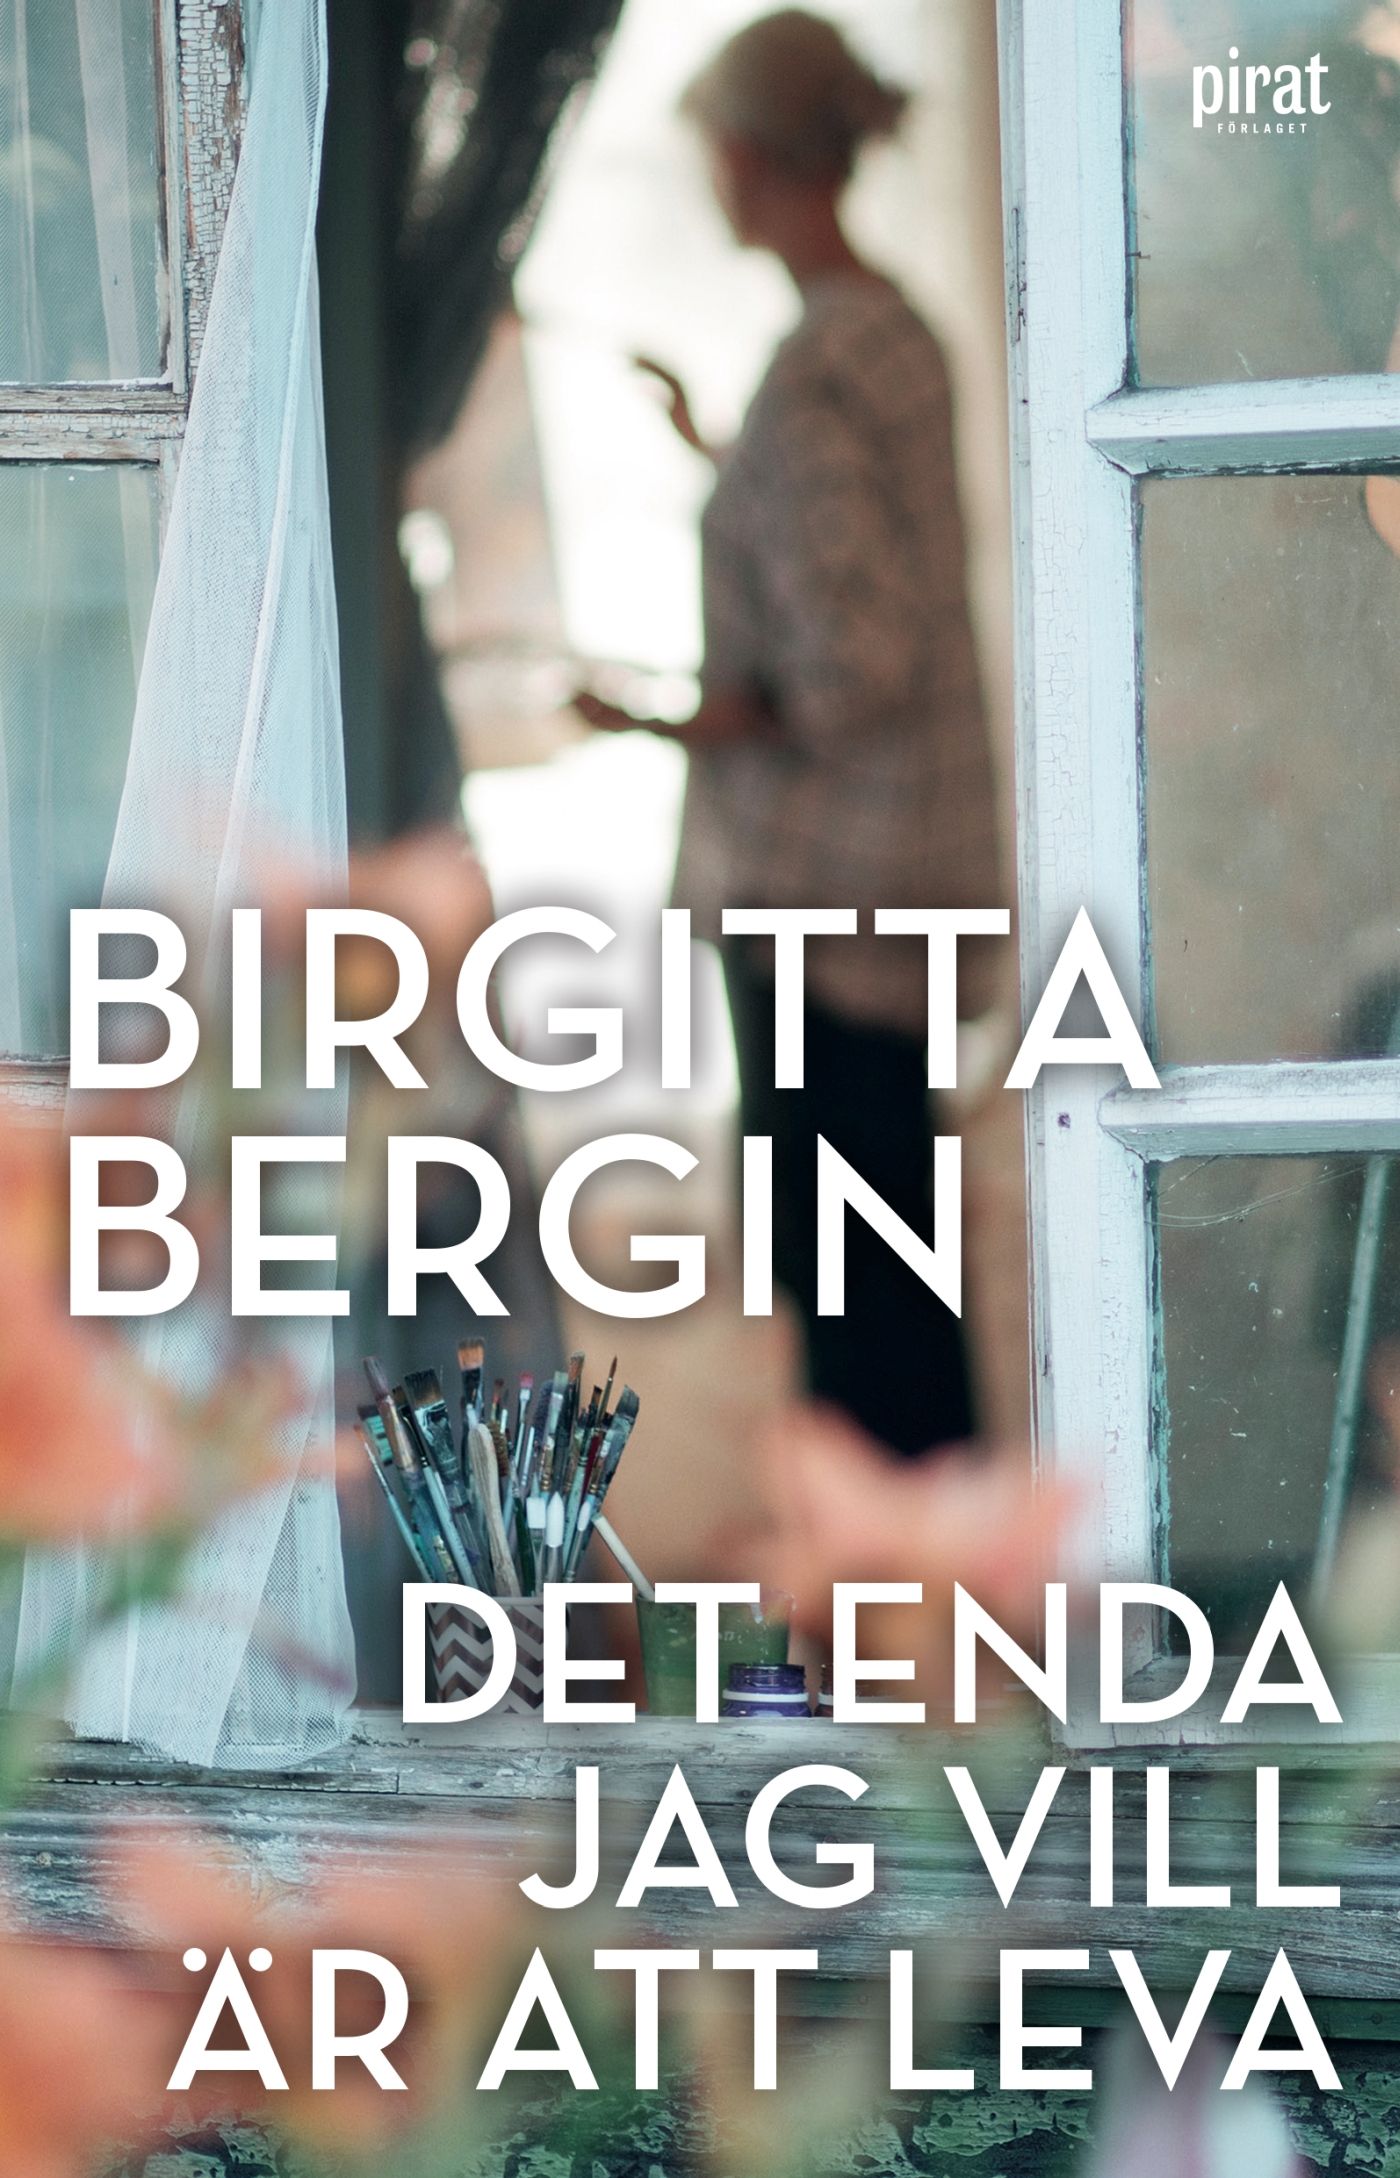 Det enda jag vill är att leva, e-bog af Birgitta Bergin